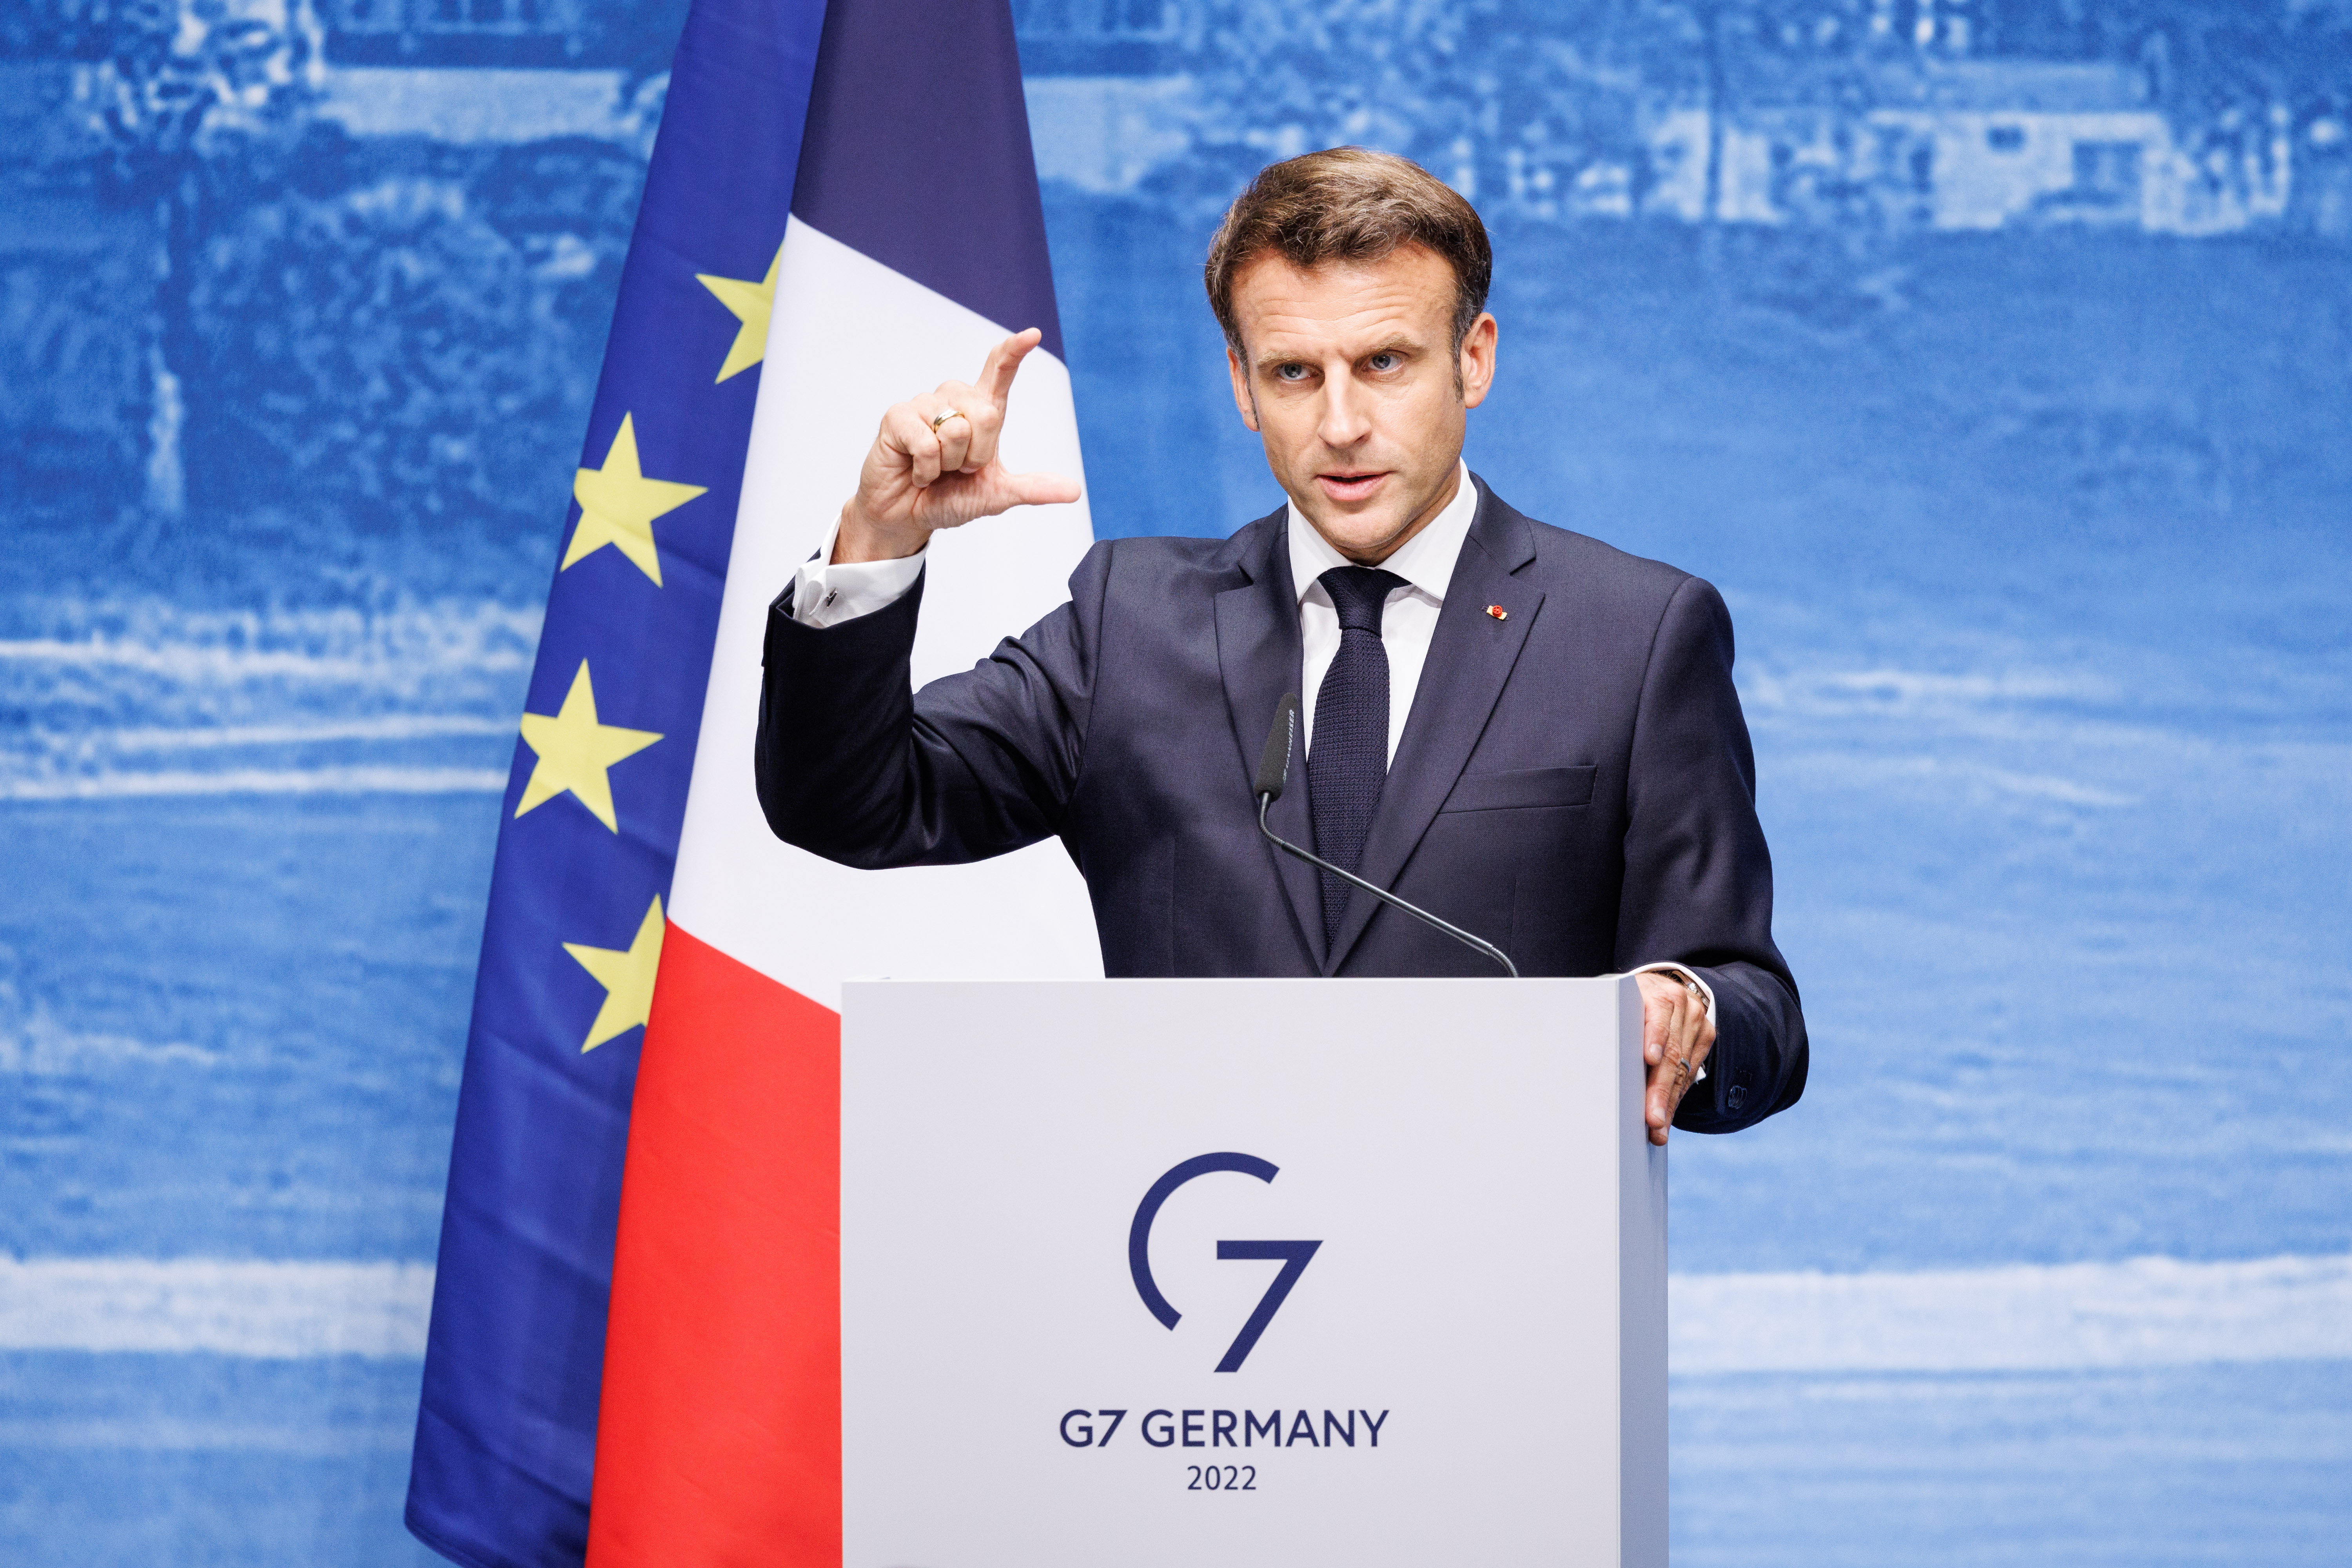 Emmanuel Macron (Präsident Frankreich) gibt eine Pressekonferenz zum Abschluss des G7-Gipfels.